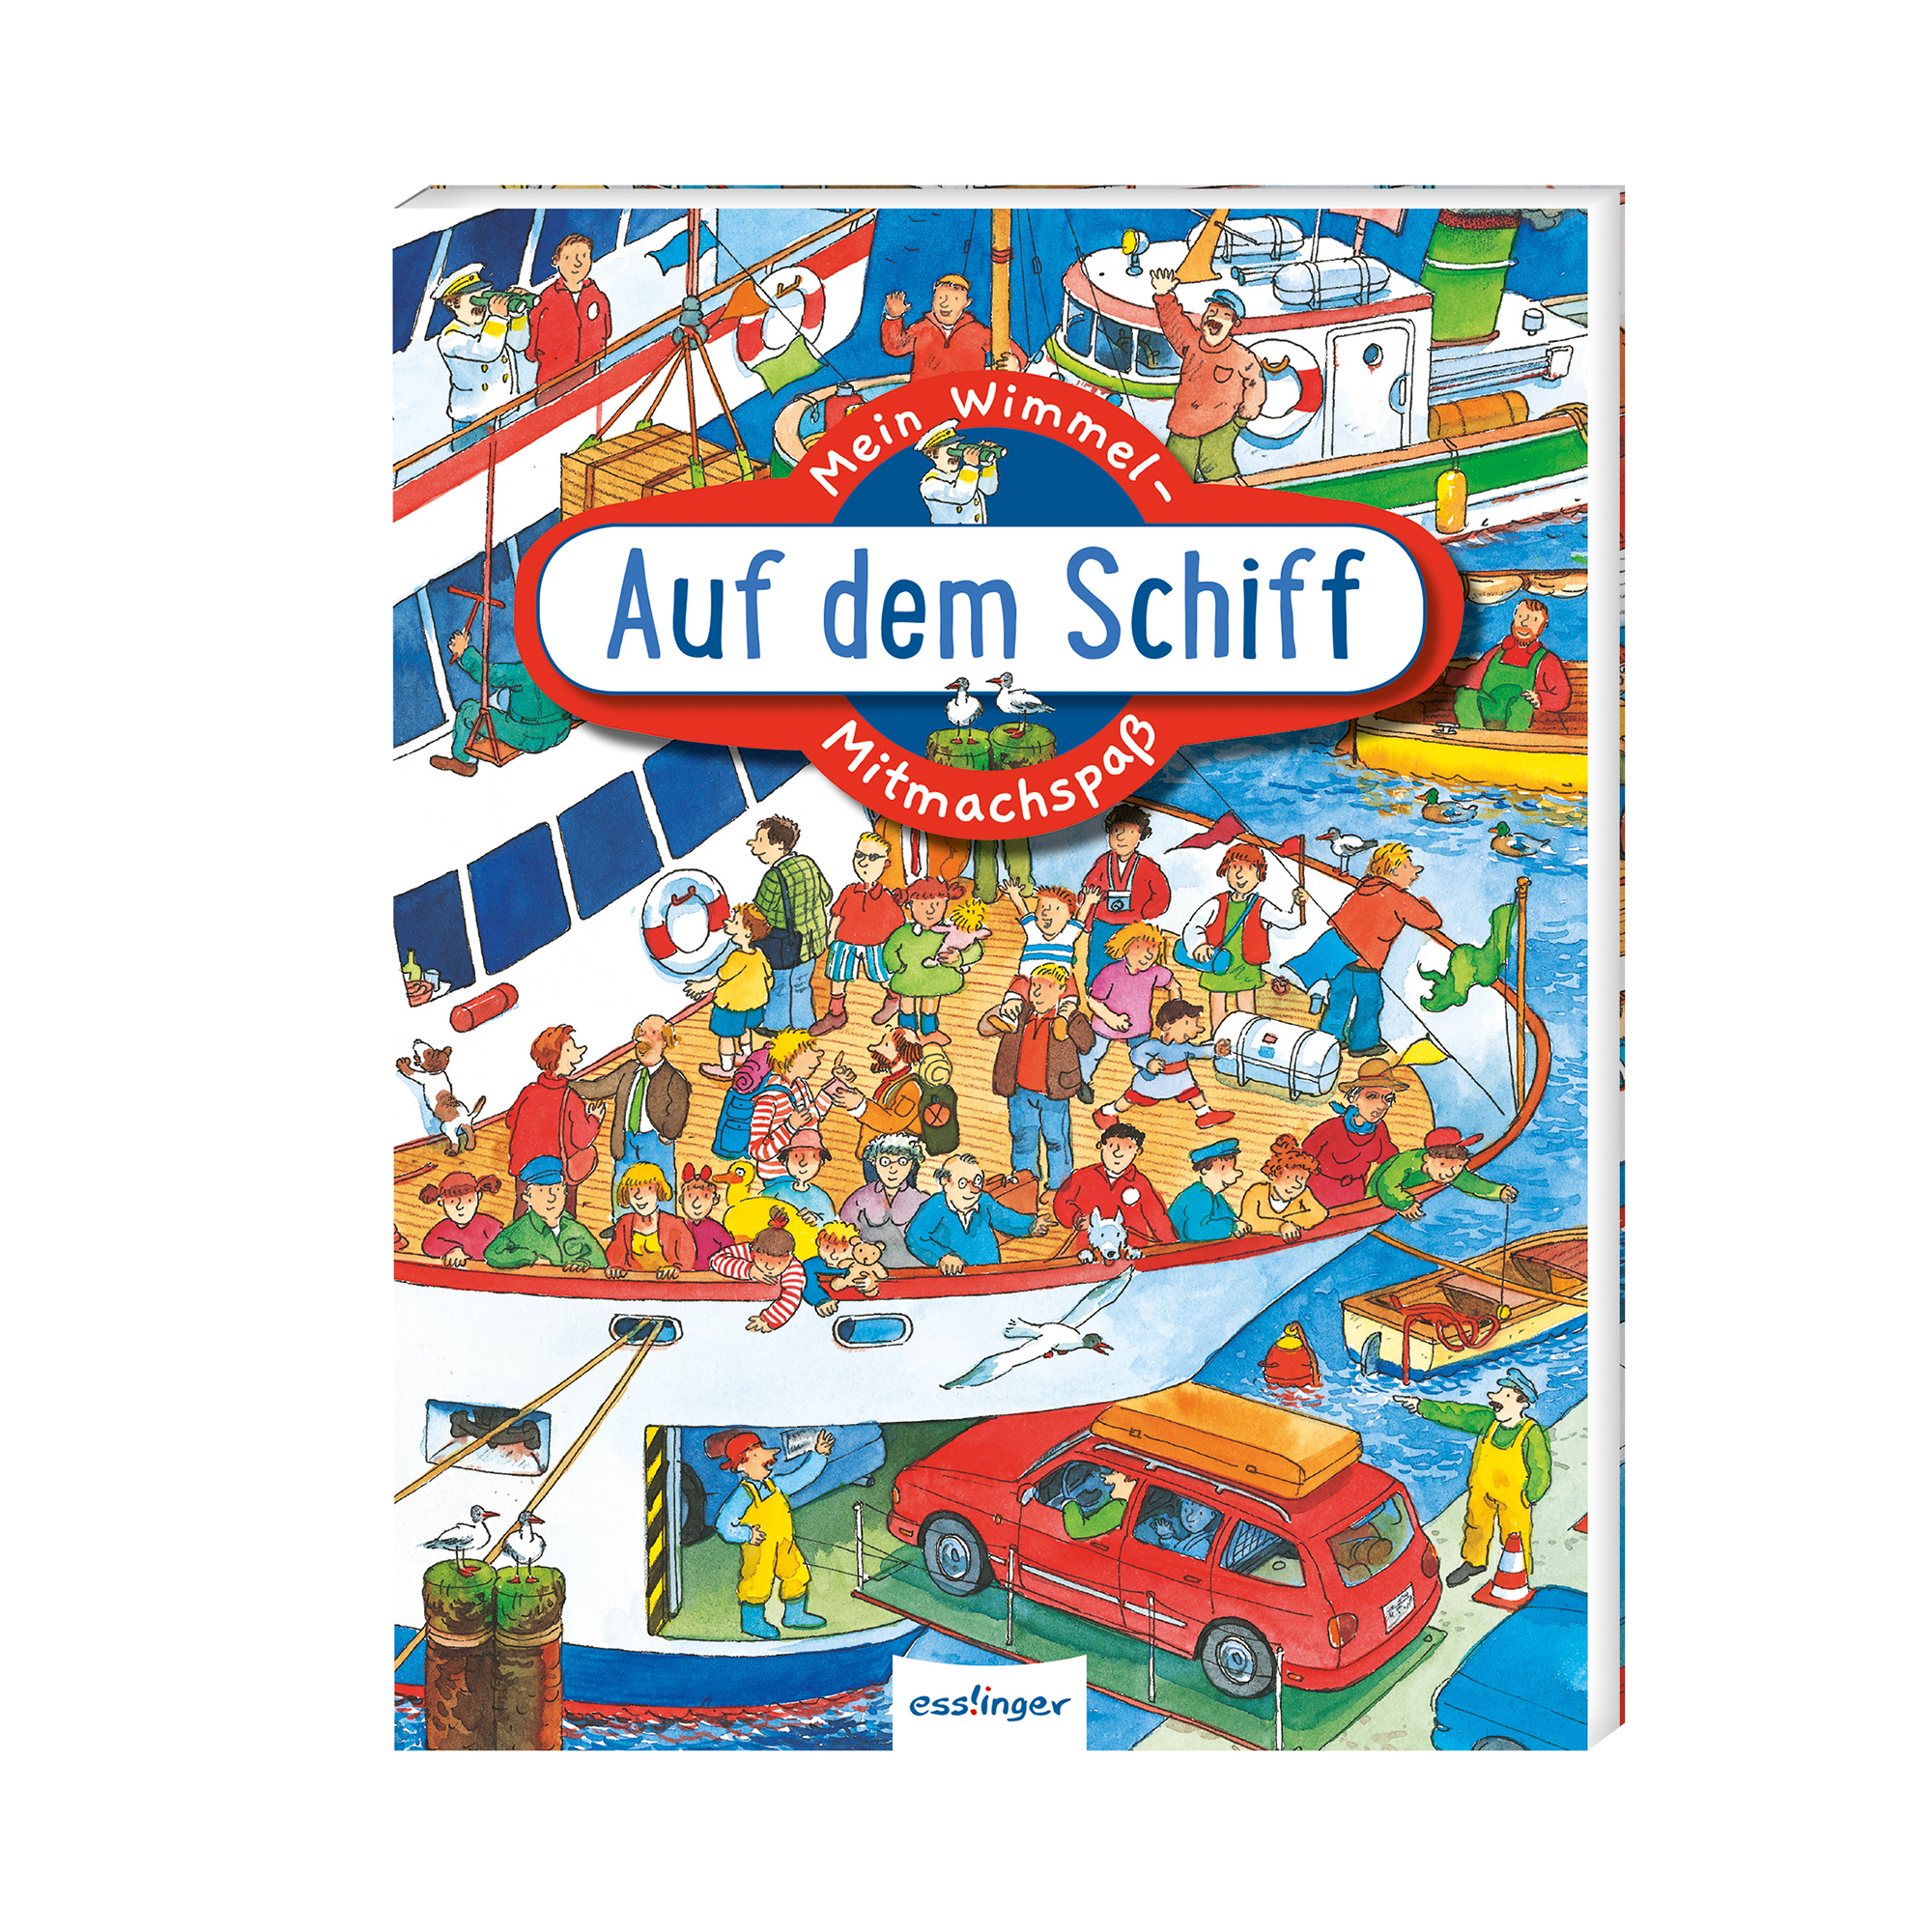 Mein Wimmel-Mitmachbuch - Auf dem Schiff ess!inger 2000579058448 1